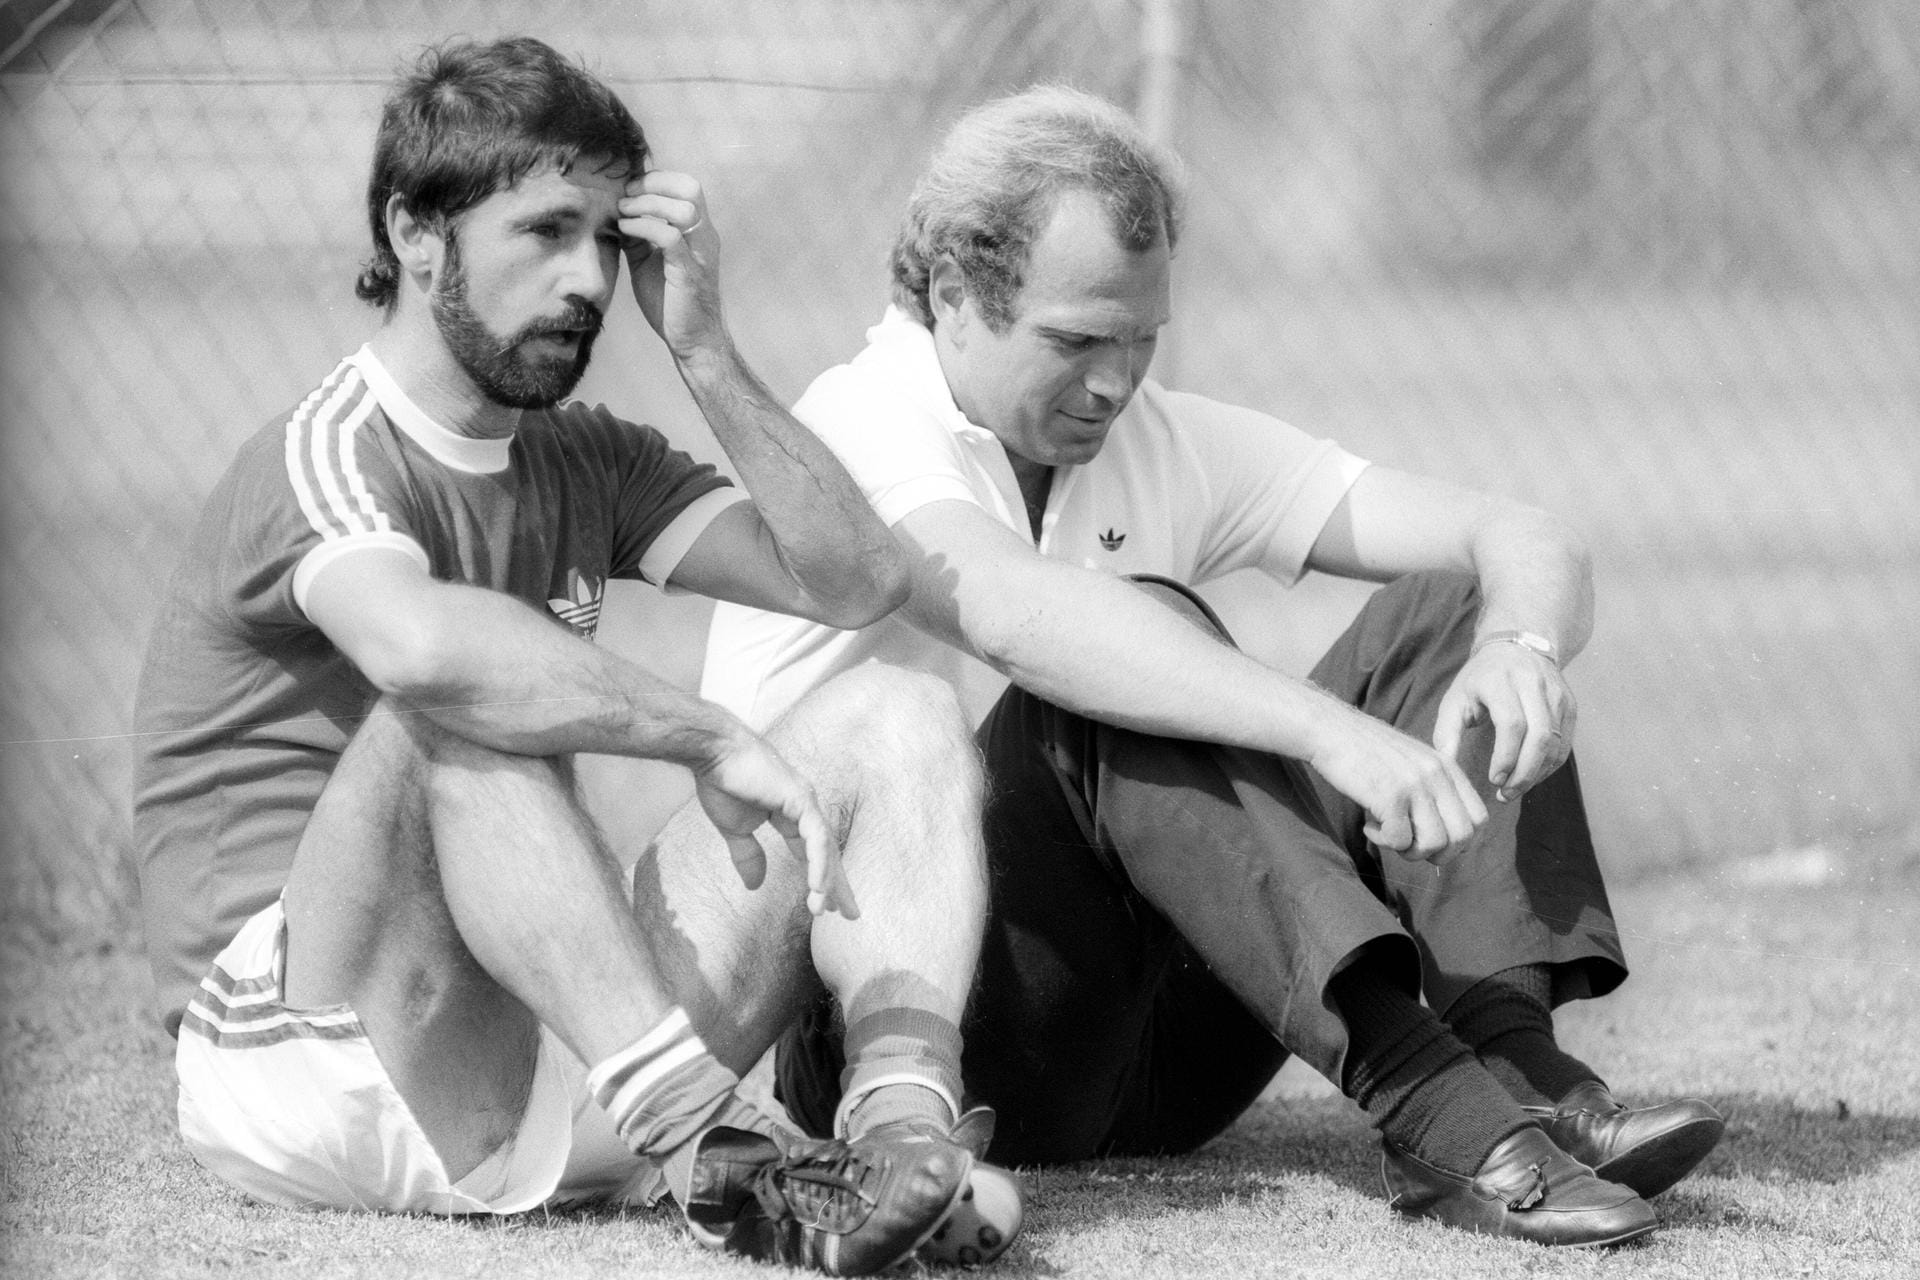 "Gerd war ein großartiger Spieler, ein großartiger Mannschaftskollege und ist bis heute ein wunderbarer, feiner Mensch", sagte beispielsweise Uli Hoeneß über Müller.